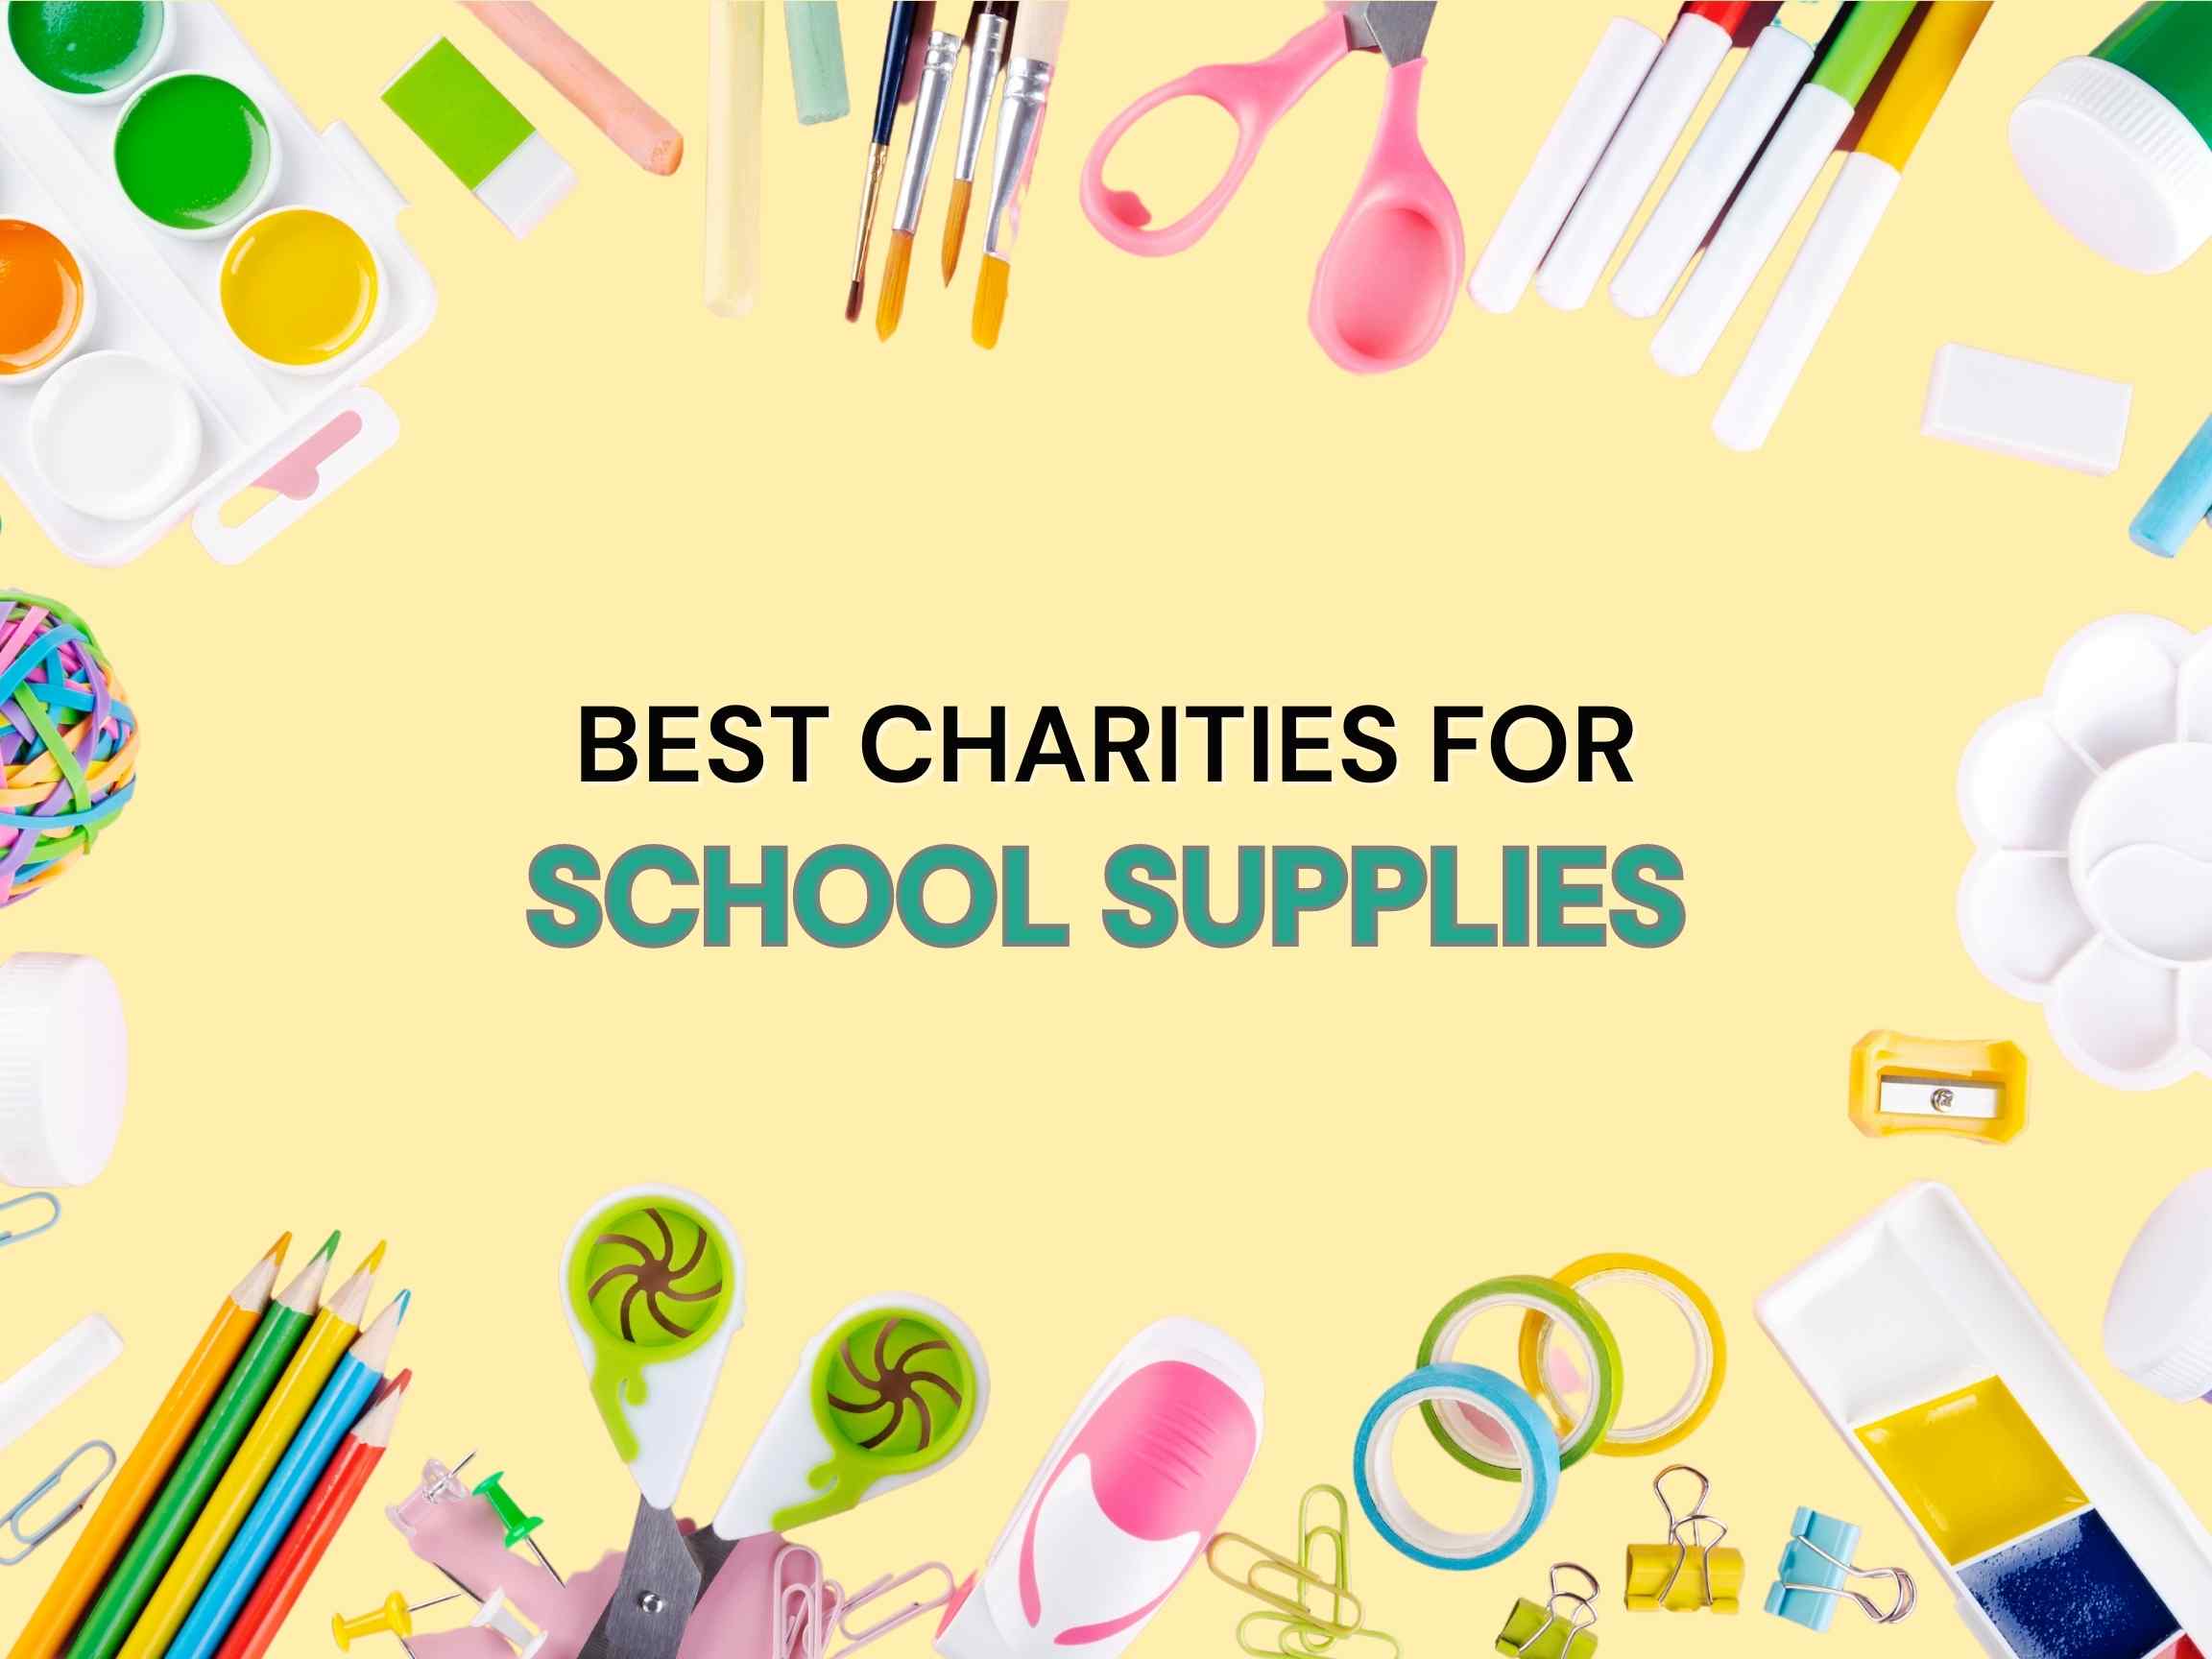 Best charities for school supplies